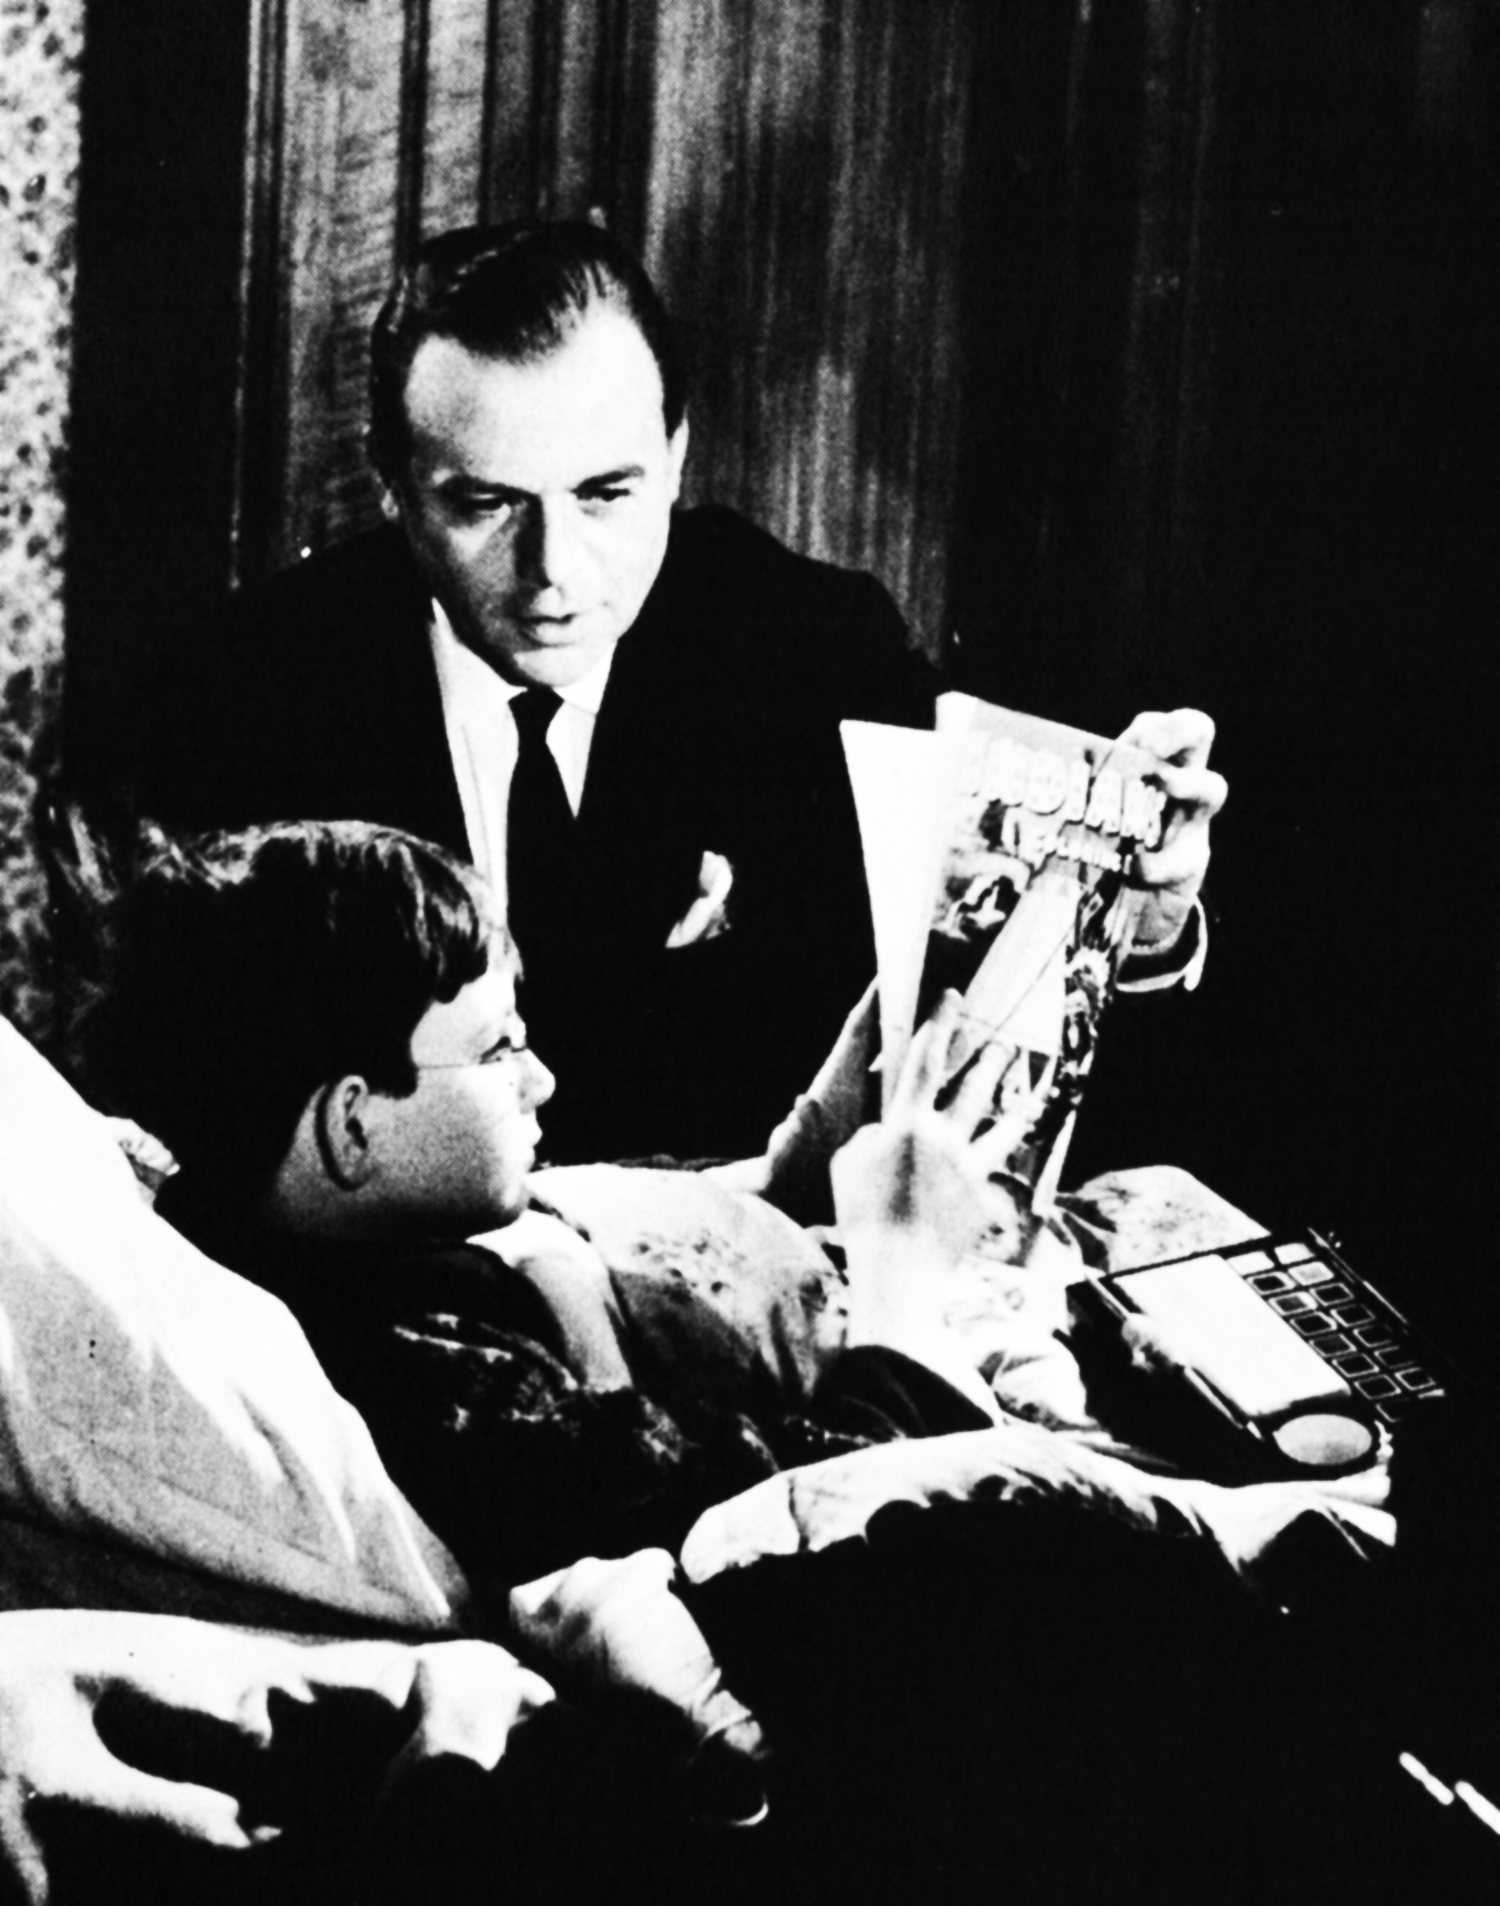 Herbert Lom talks to a boy in bed